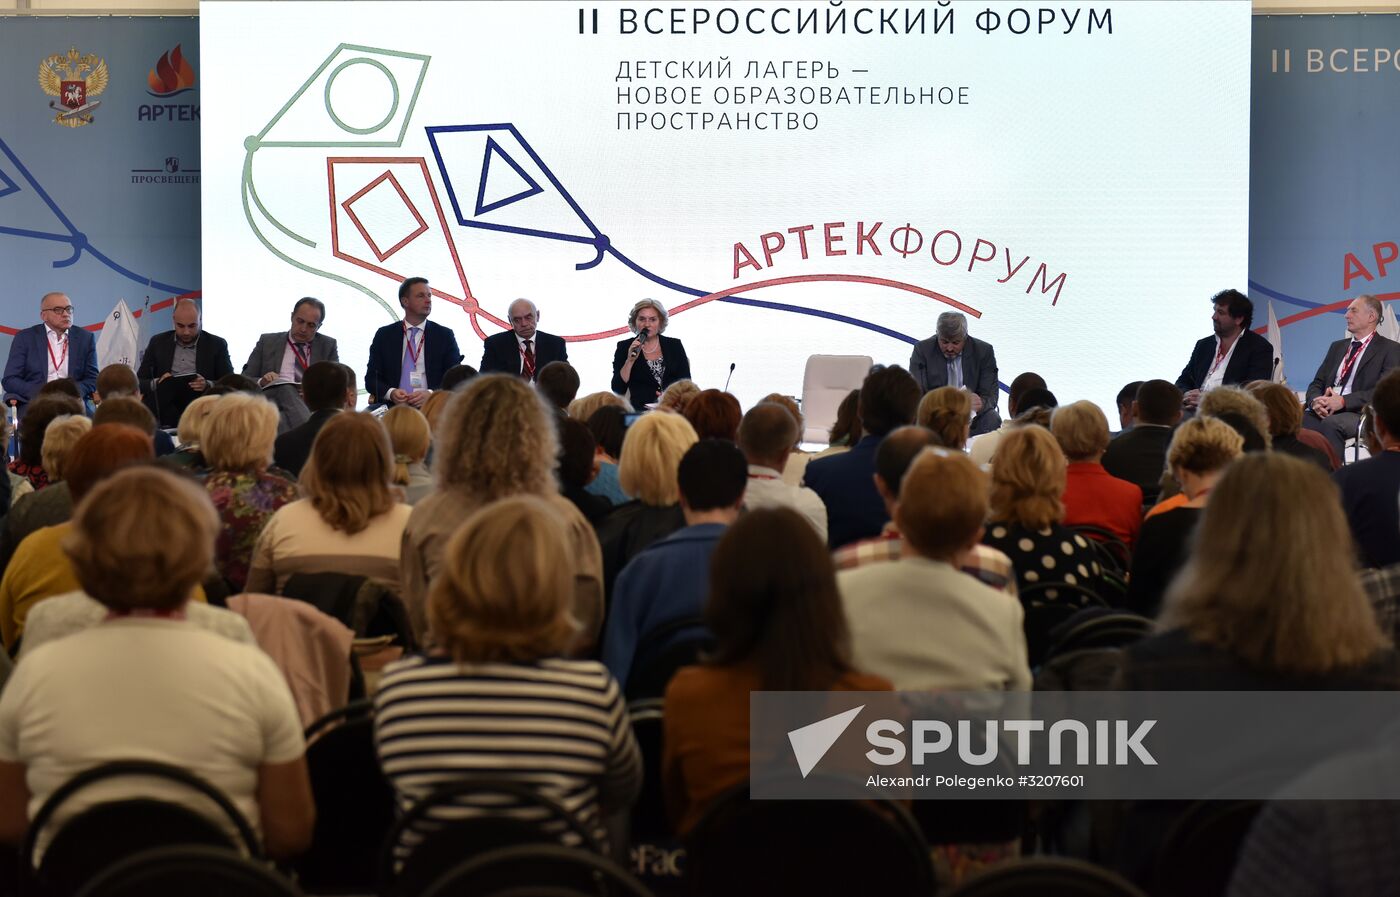 2nd all-Russian educational forum in Artek